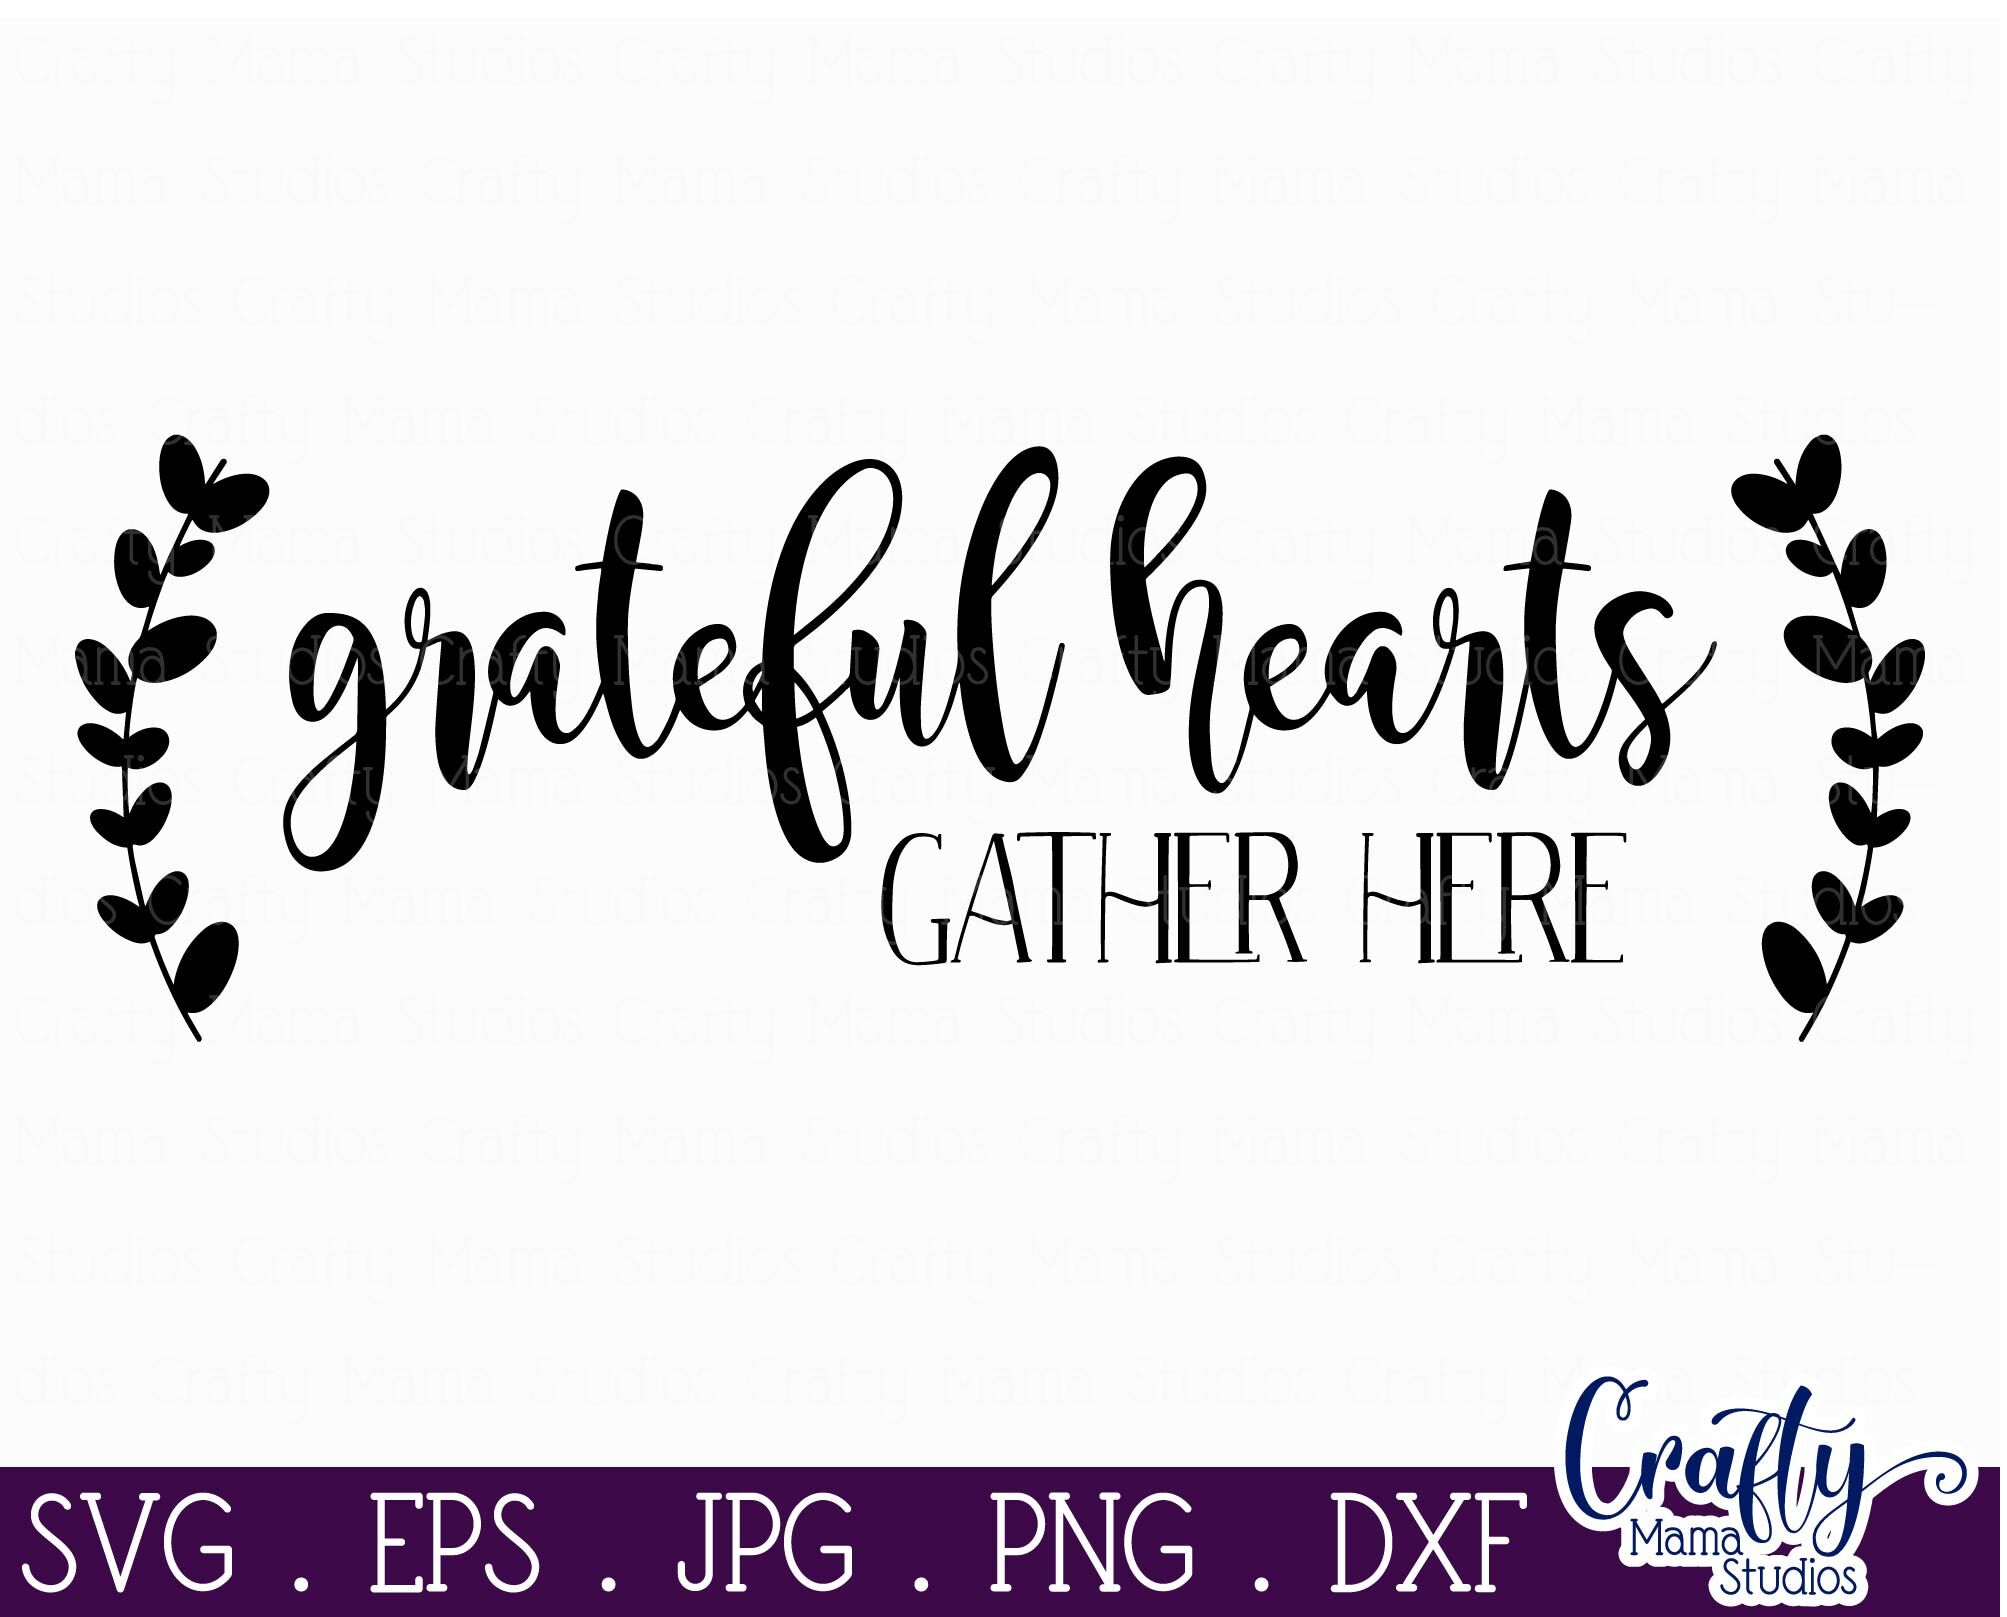 Download Family Svg - Love Svg - Home Svg - Grateful Hearts Gather ...